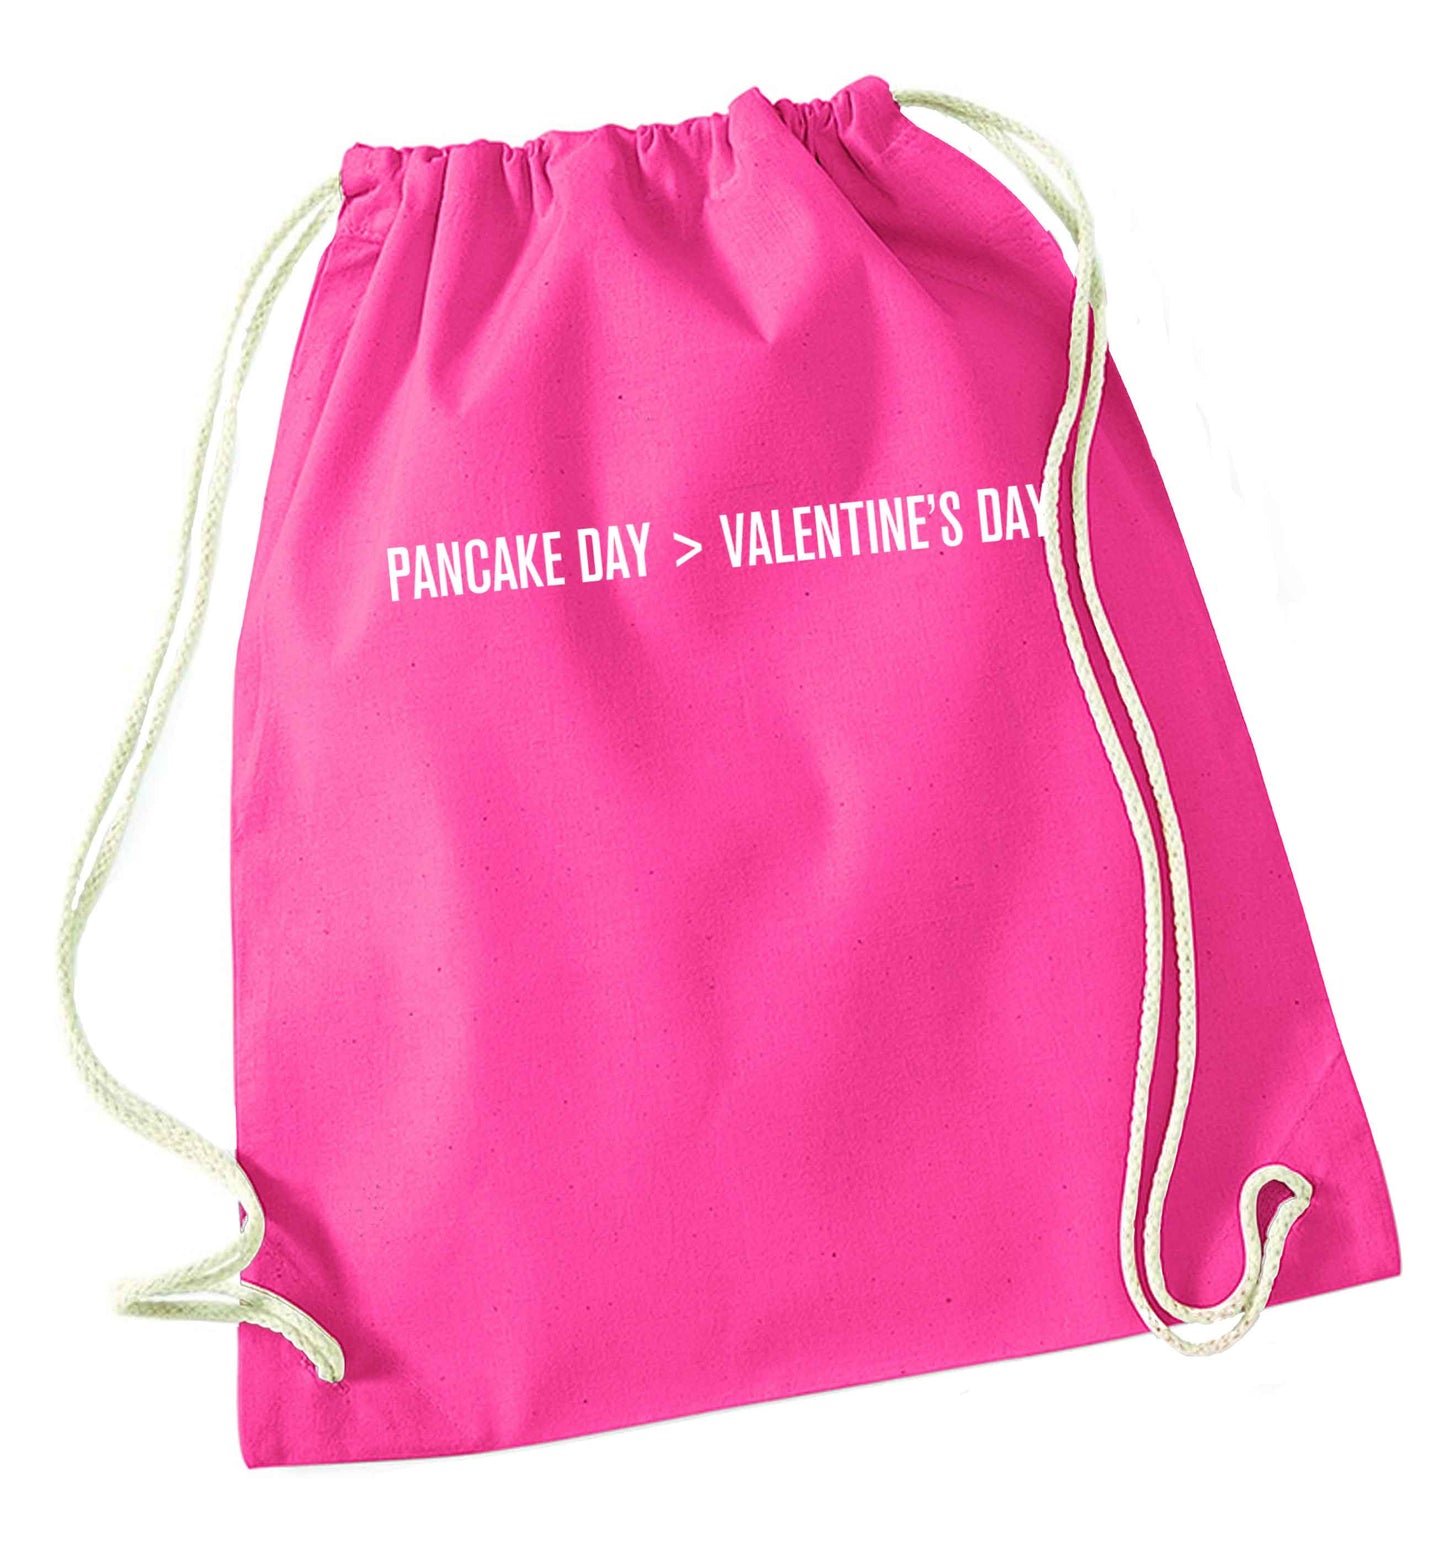 Pancake day > valentines day pink drawstring bag